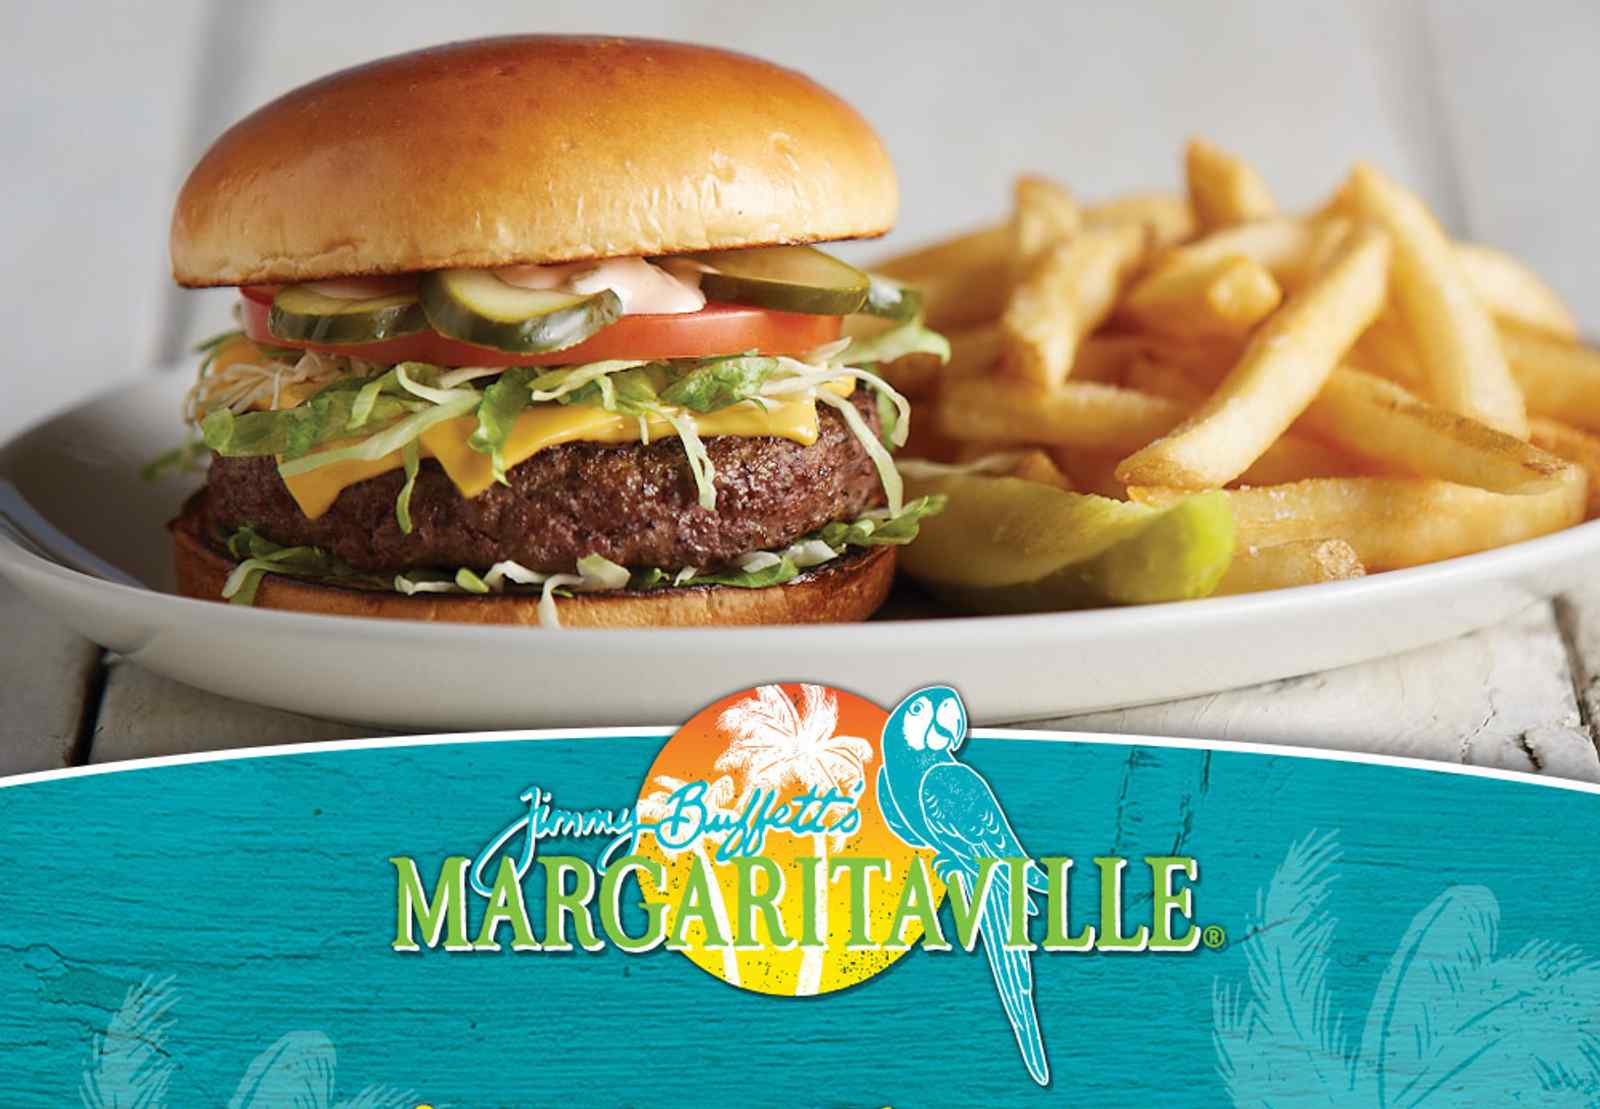 Margaritaville Restaurant Nashville